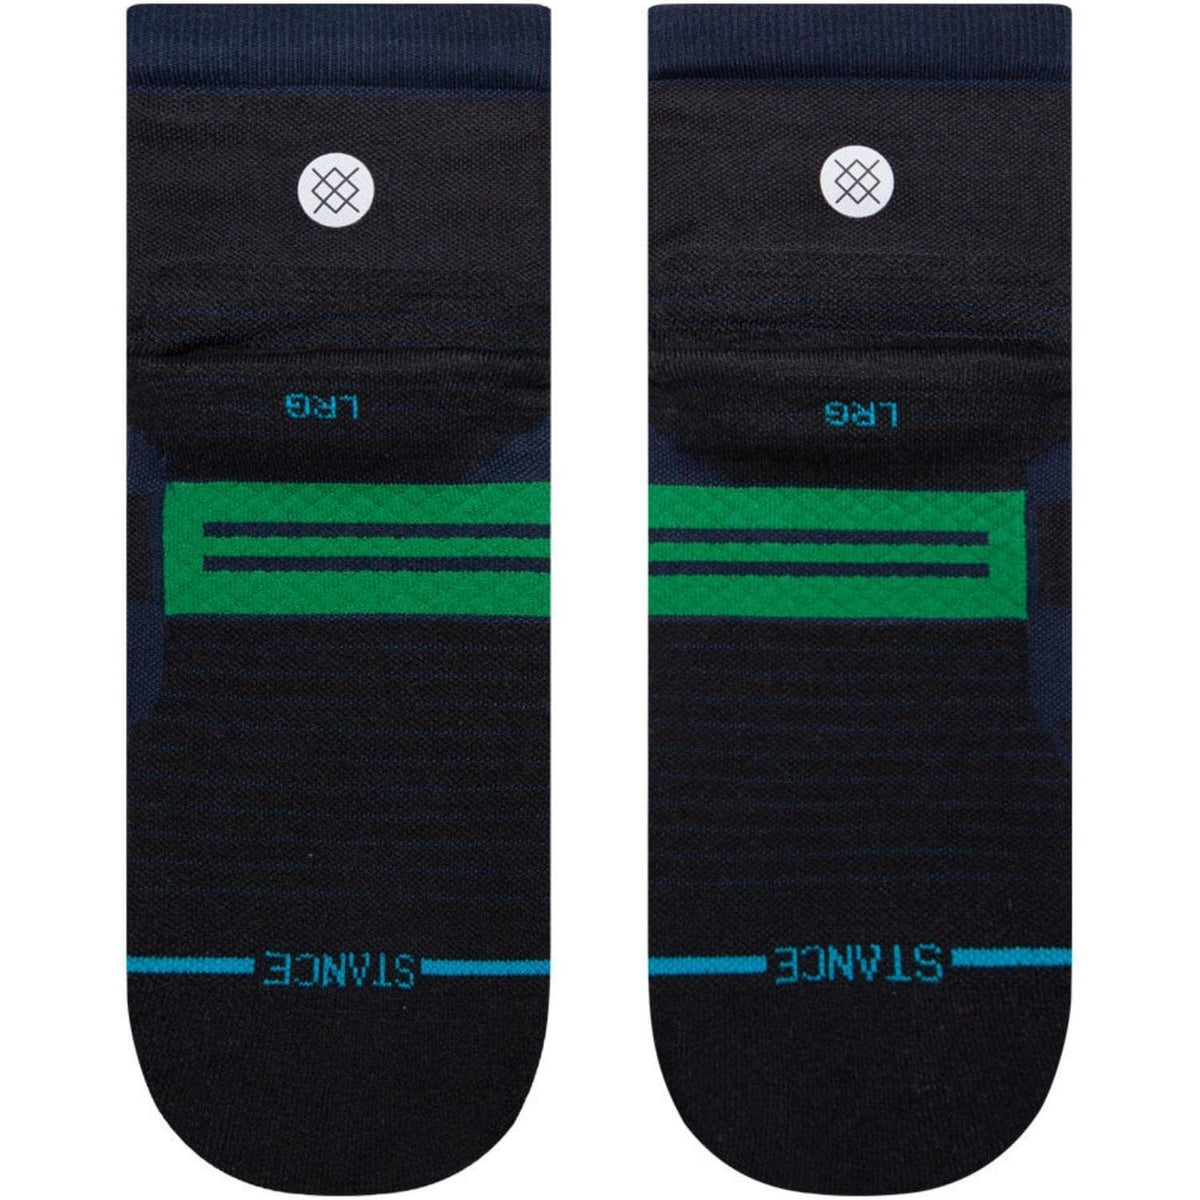 Stance Grip Quarter Performance Socks - Navy - Unisex Running/Training Socks by Stance